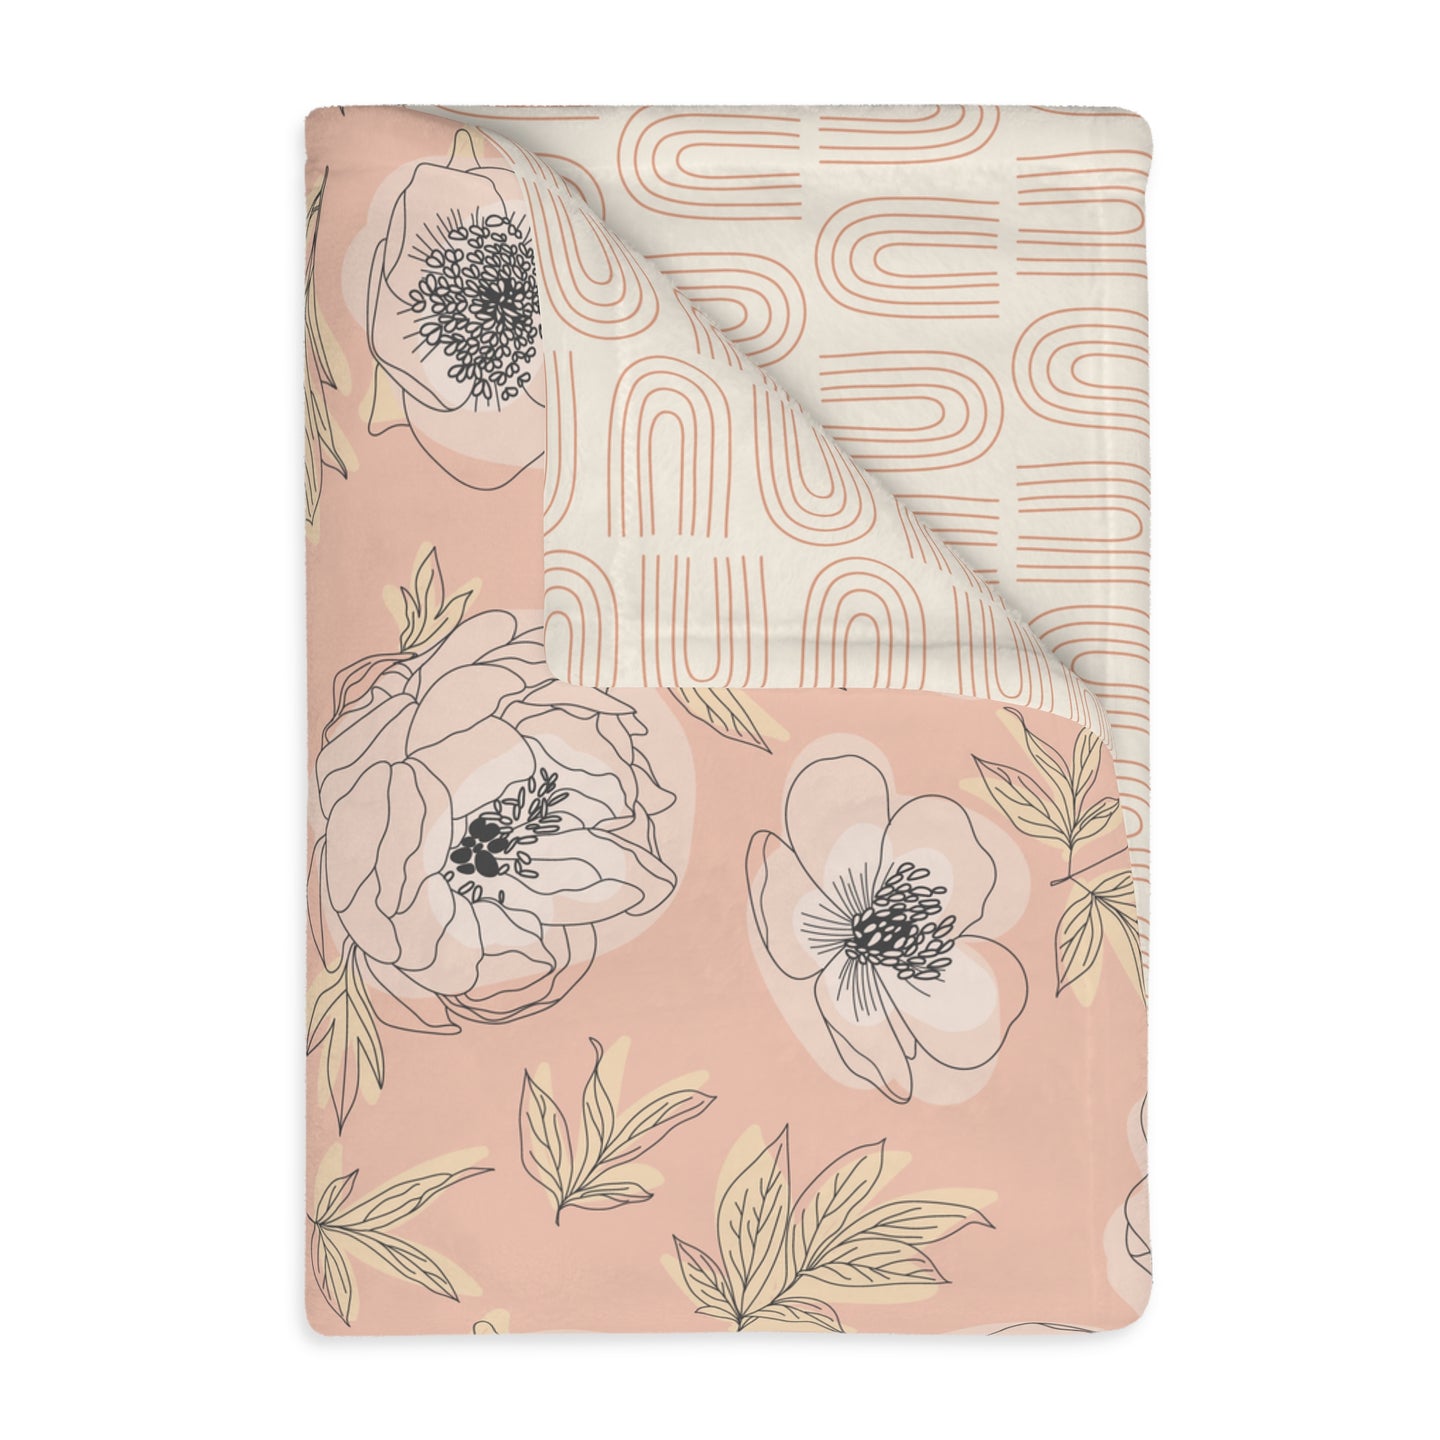 BOHO OUTLINED FLORAL // Peachy Pink // Velveteen Minky Blanket